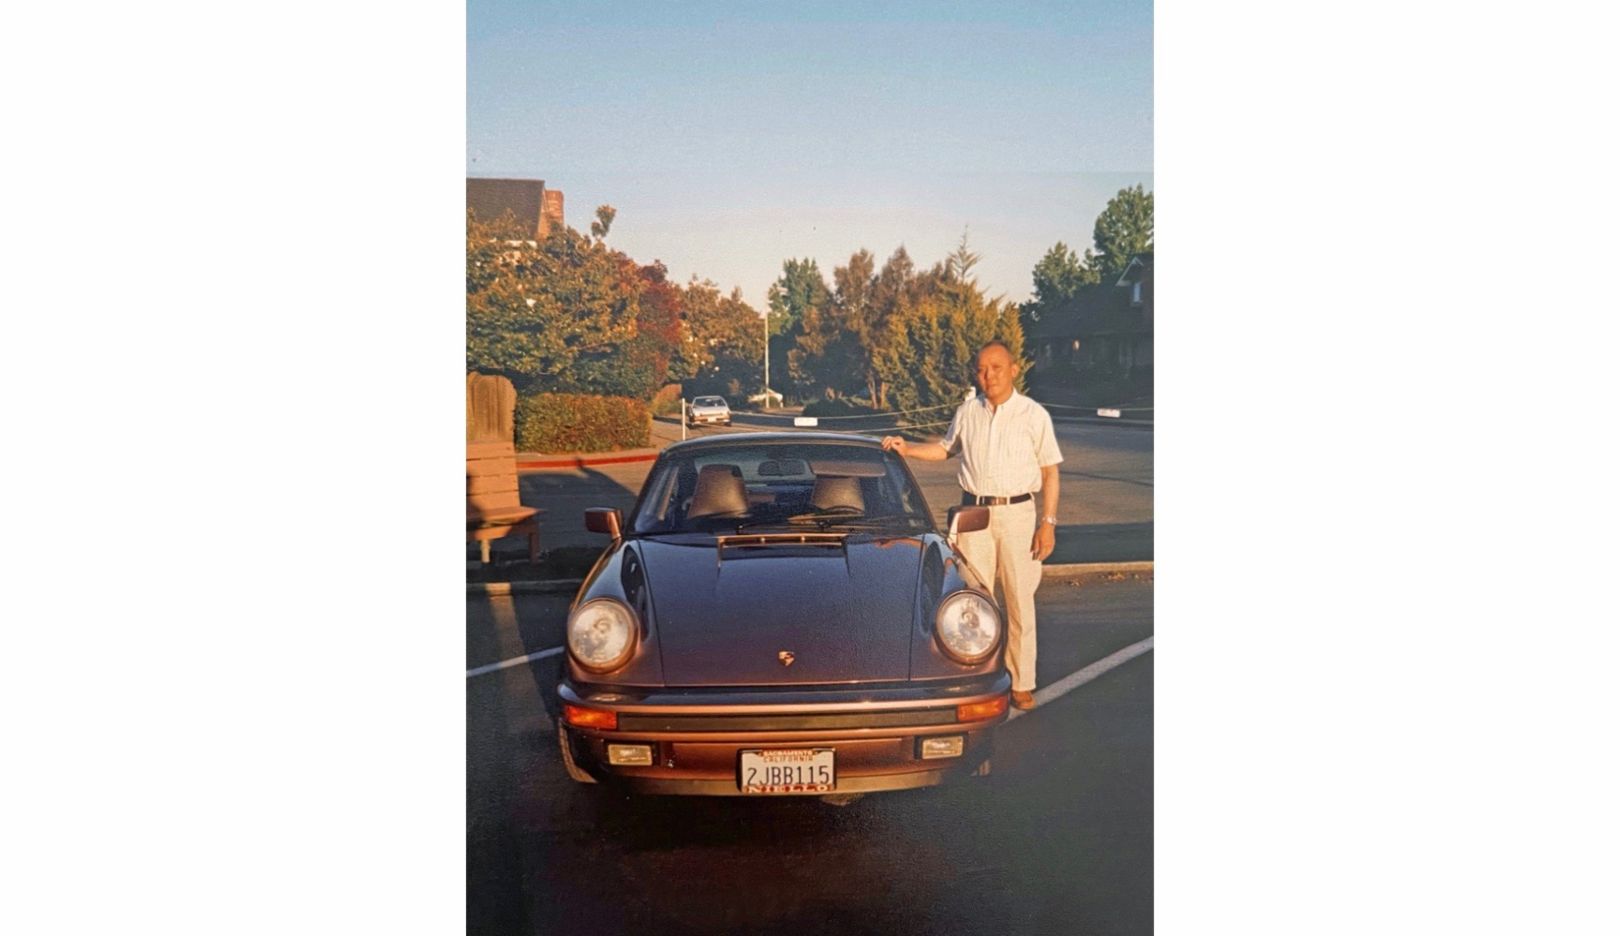 國際知名影星吳彥祖的父親吳振 (George Wu) 在剛退休時買了人生第一輛保時捷 911。當時才 12 歲的吳彥祖，為父親的新車挑選顏色——他選了稀有的黑醋栗紅。